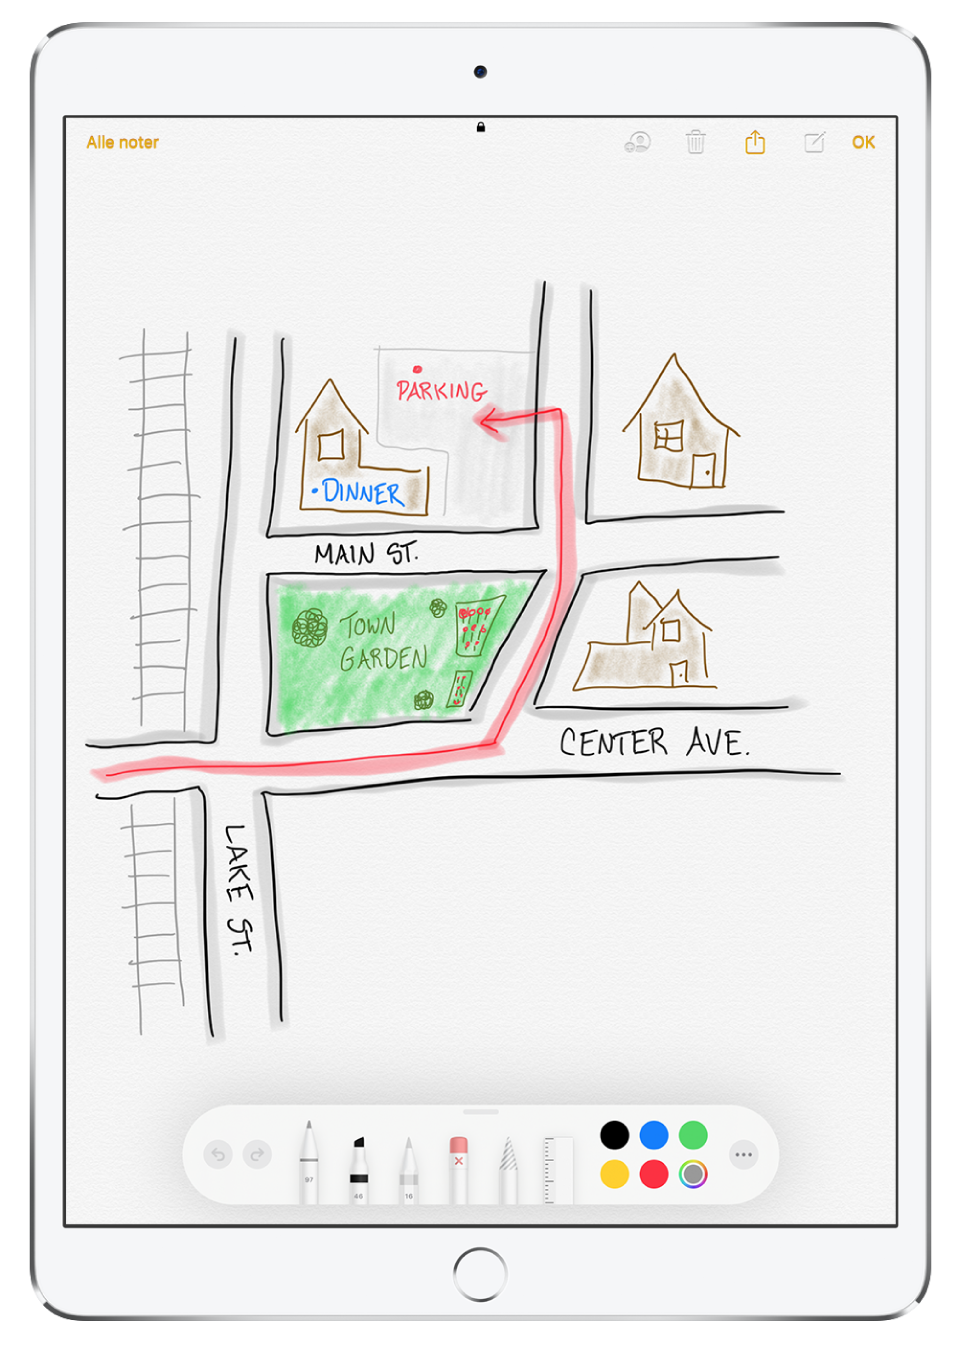 En tegning af et lokalområde i en note i appen Noter. Gaderne på tegningen er forsynet med gadenavne, og en rød pil viser parkeringsmuligheder. Langs bunden af skærmen findes værktøjslinjen til markering med et skriveredskab og en speciel farve valgt.